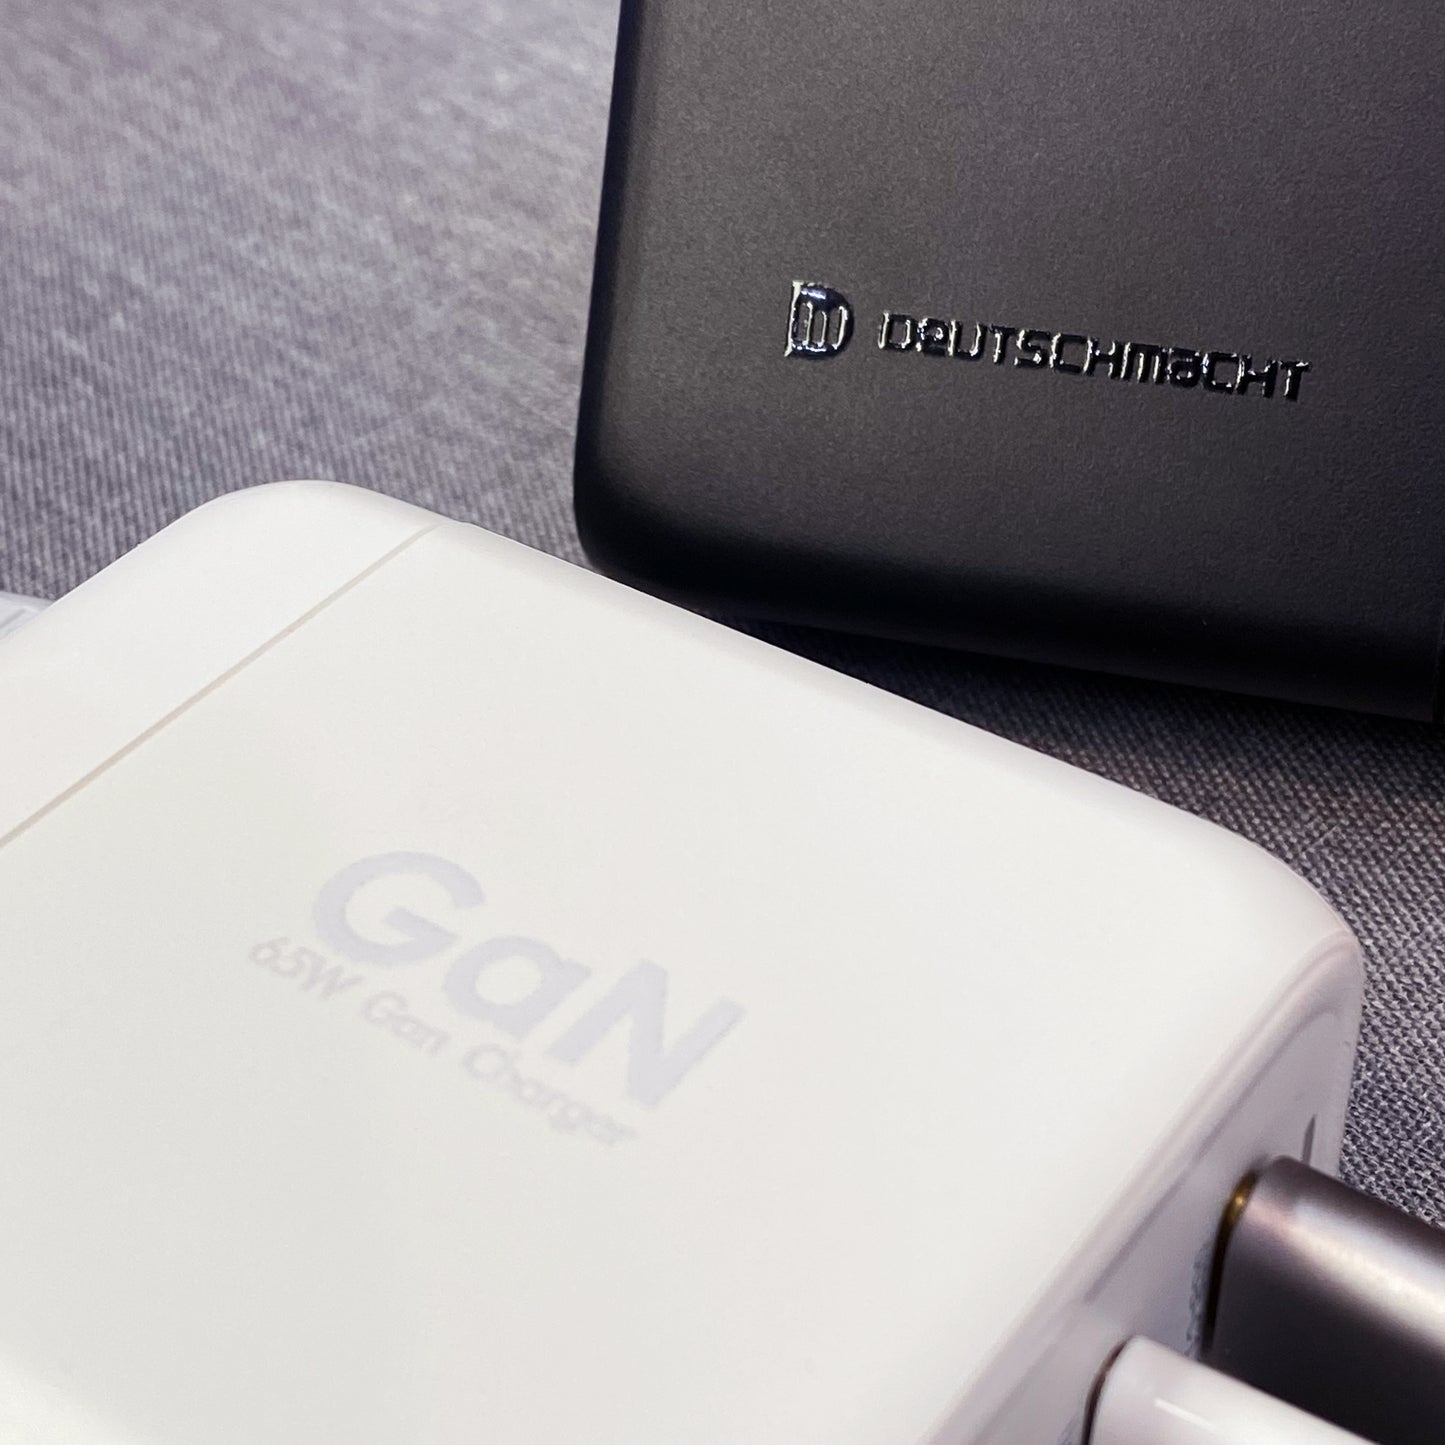 65W GaN USB 4-Port 快速充電器